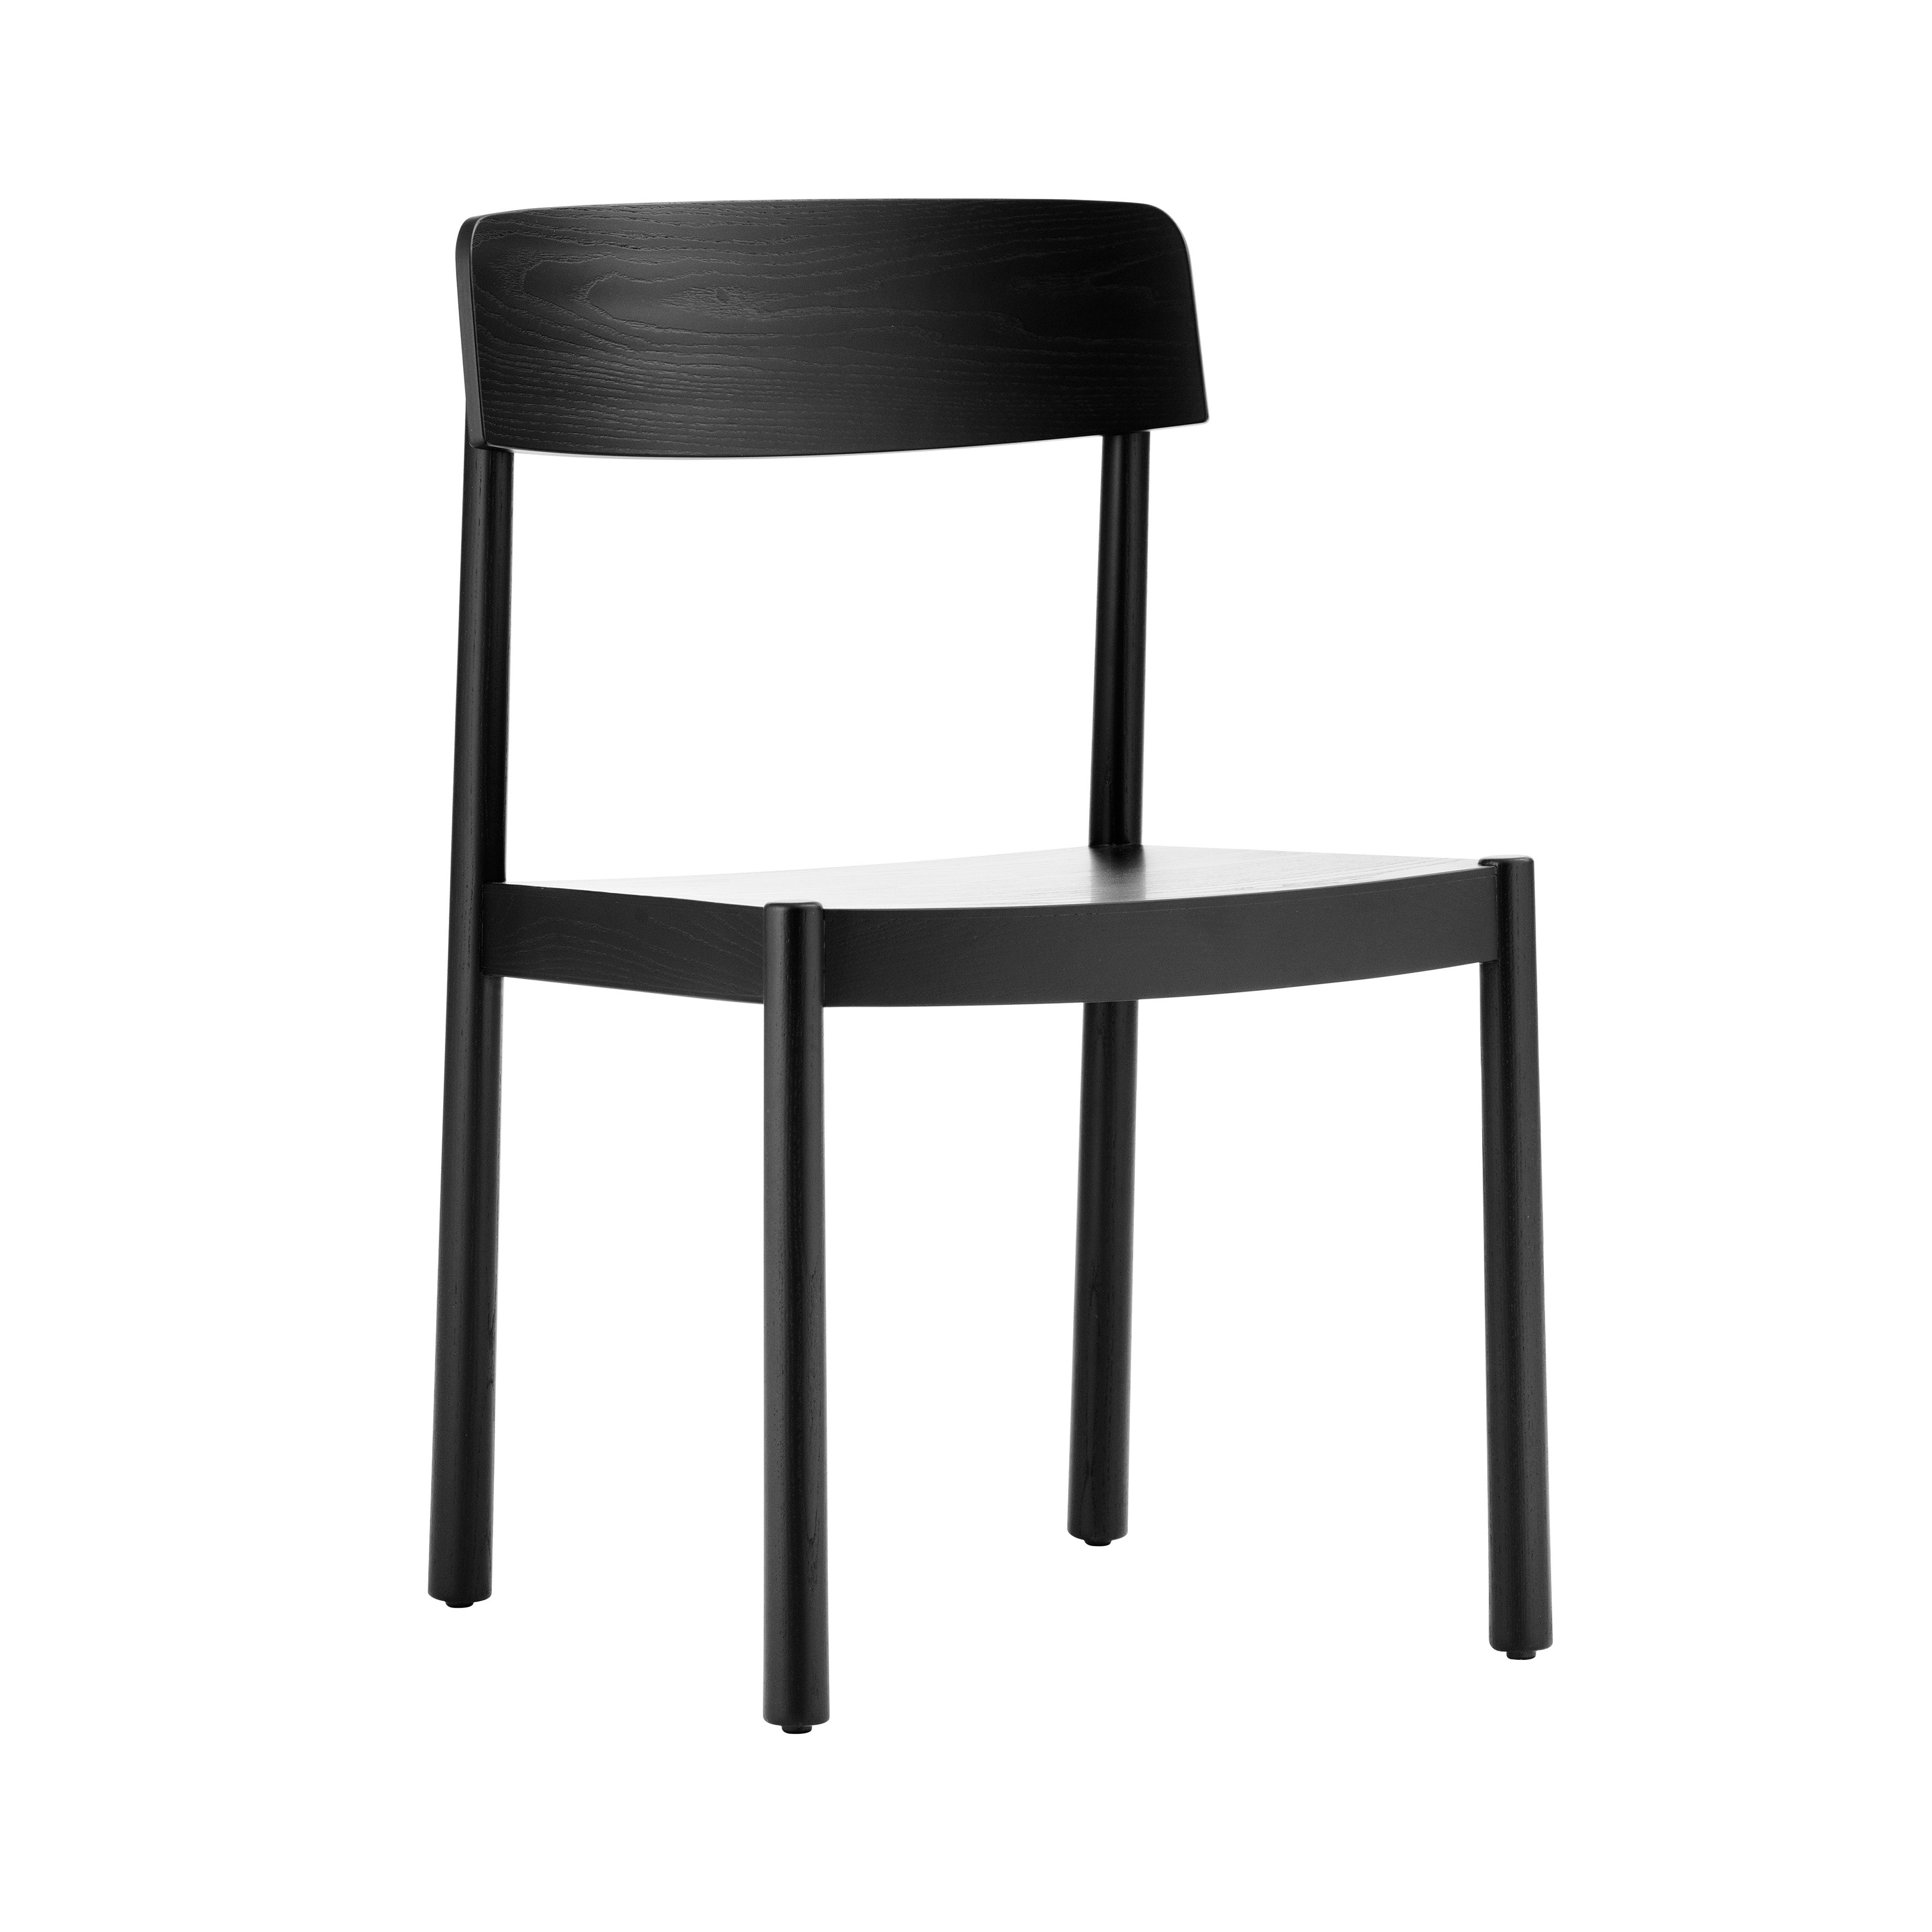 Timb Chair: Black